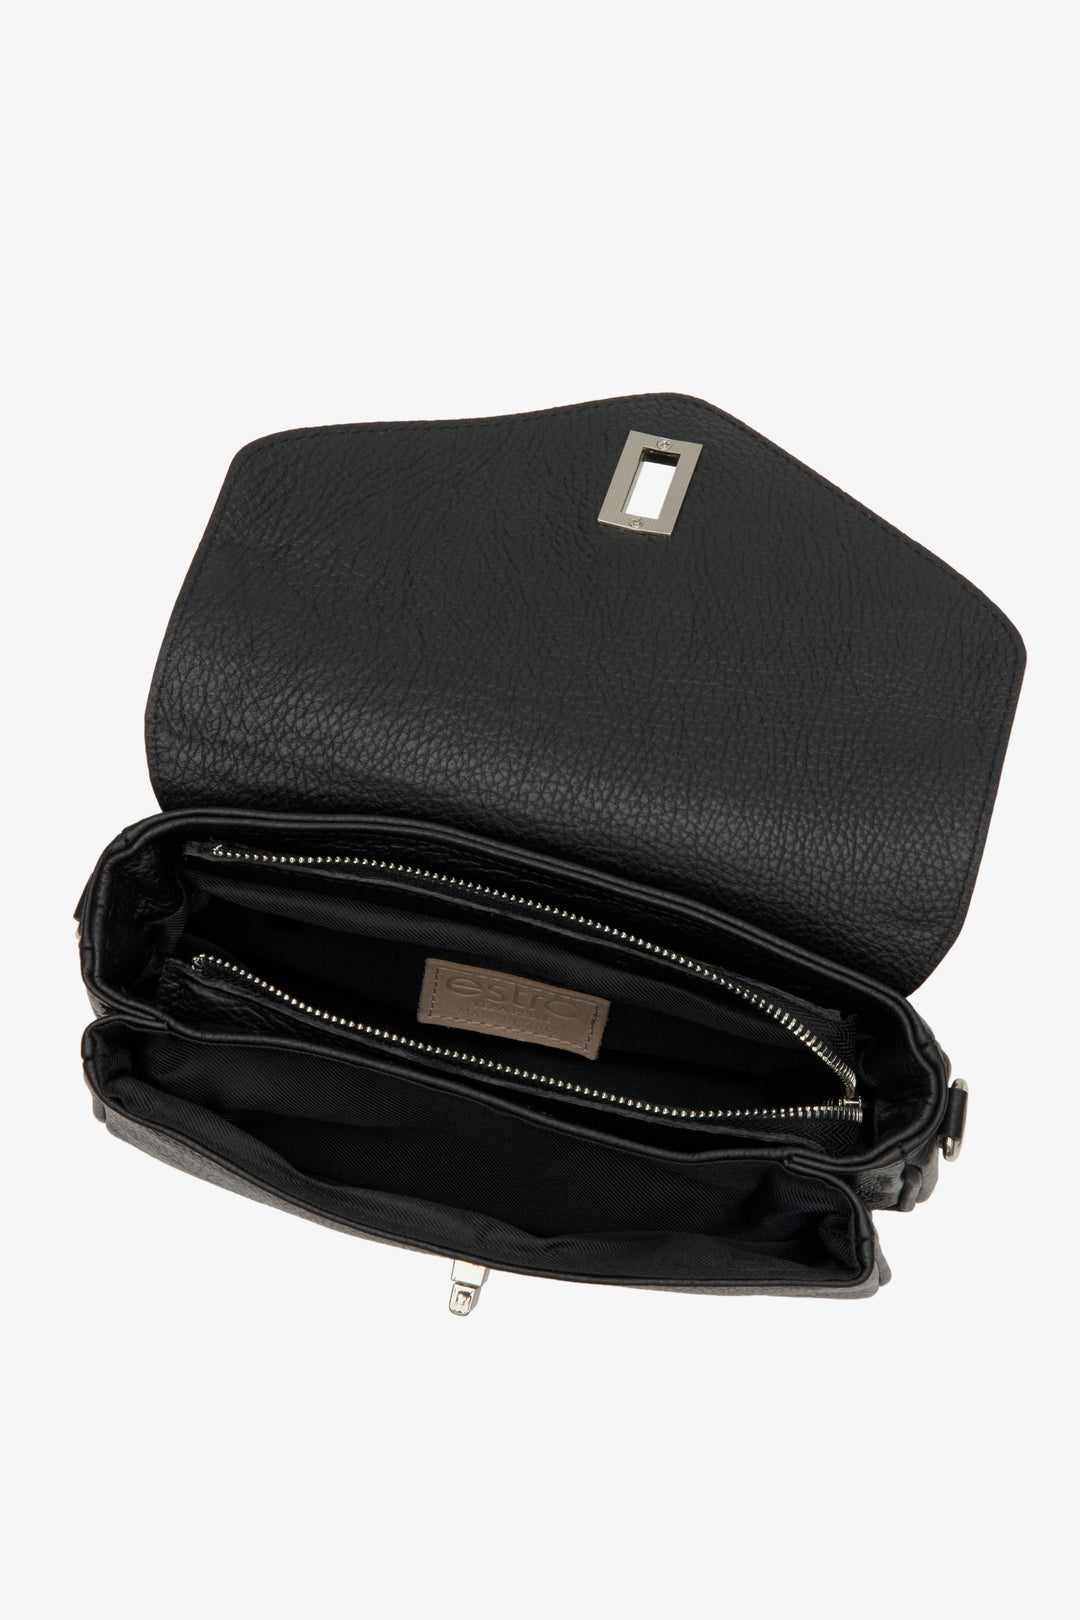 Leather black Estro women's shoulder bag - presentation of the lining.